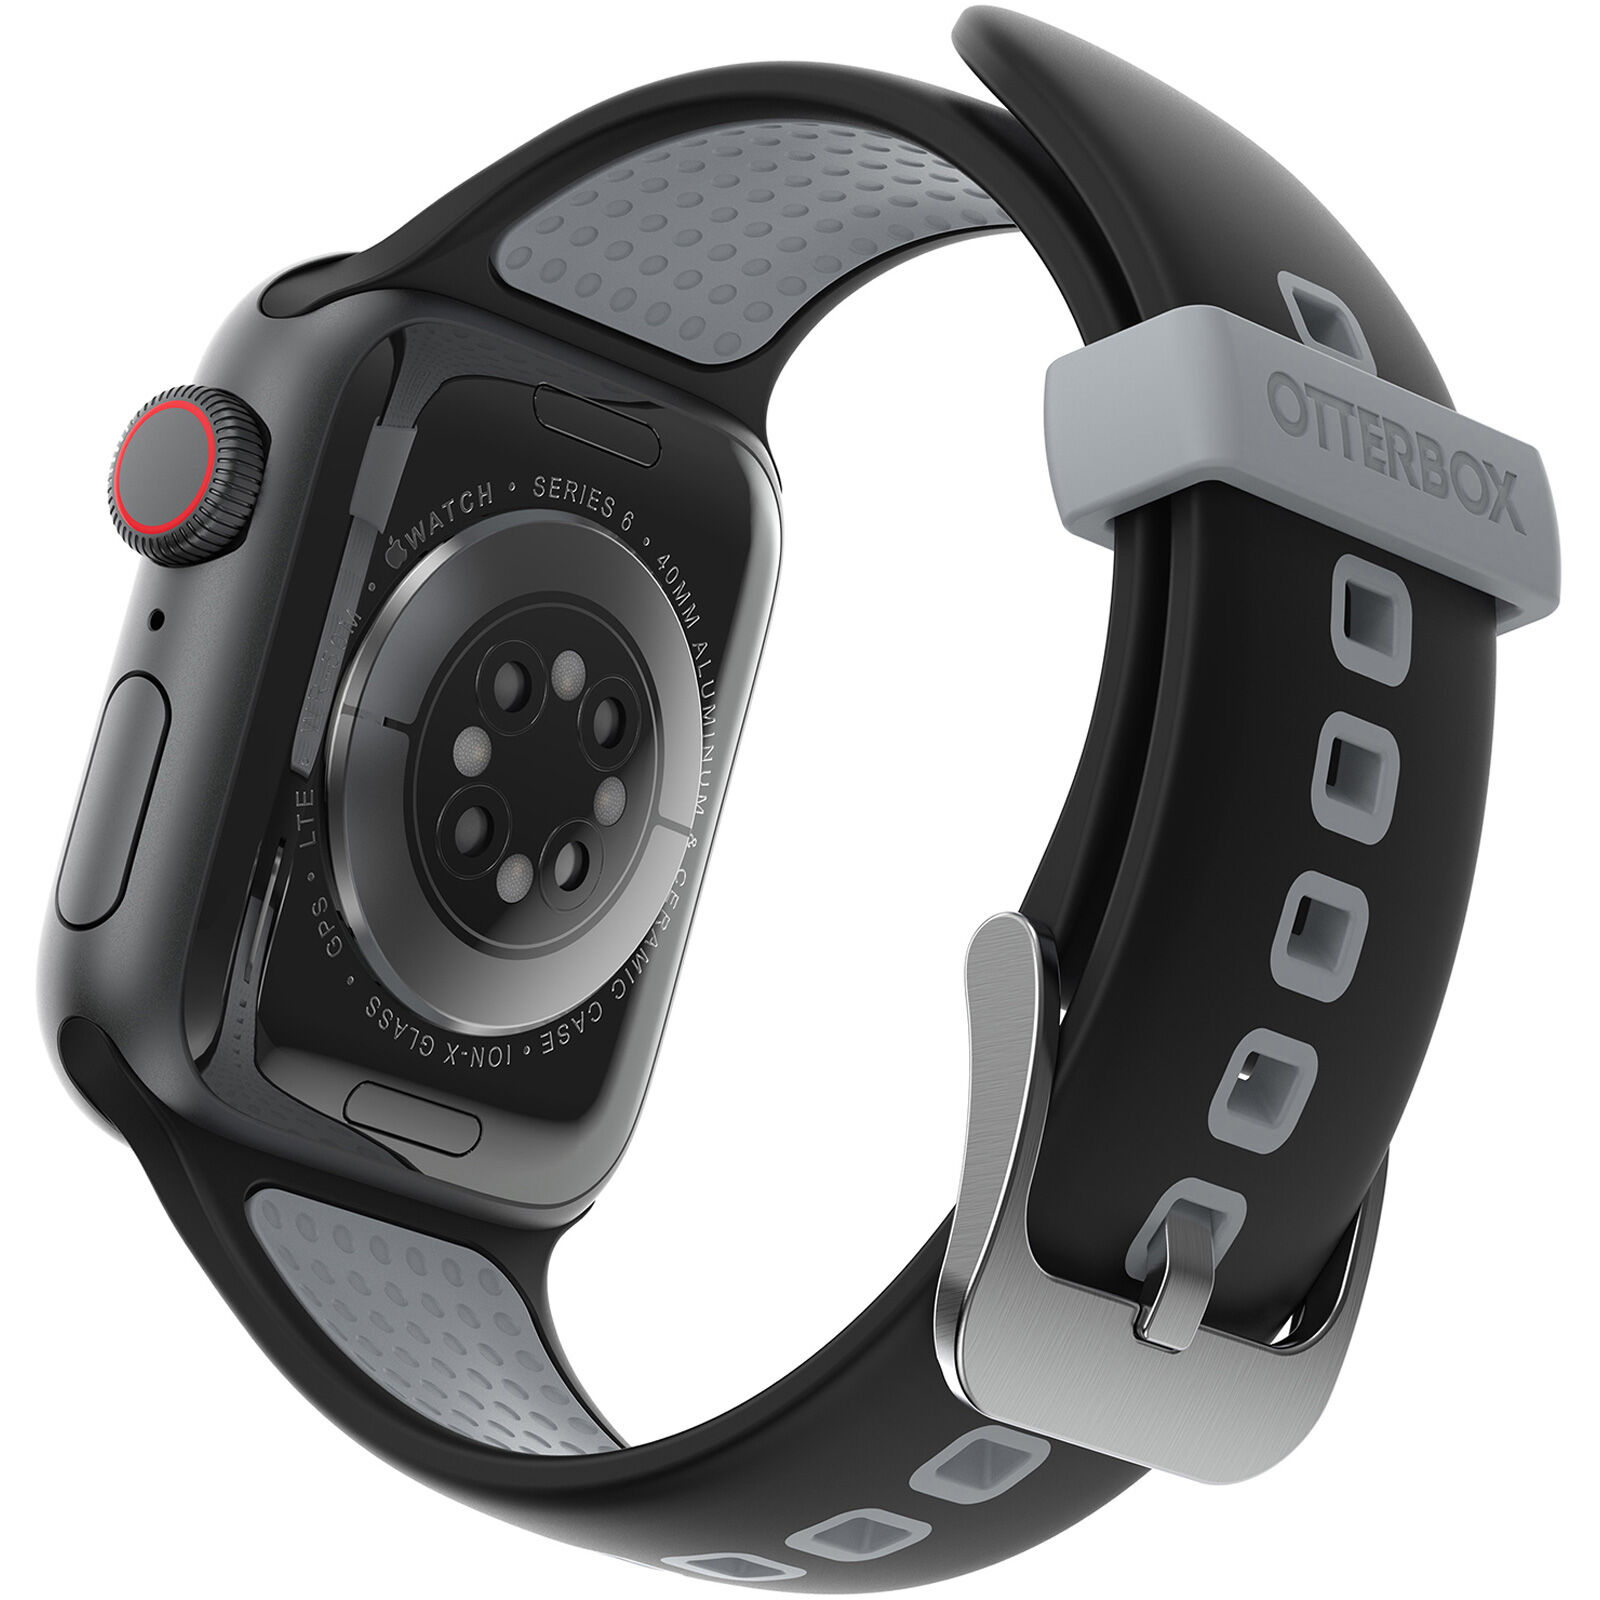 OtterBox Armband für Smartwatch (77-83894)